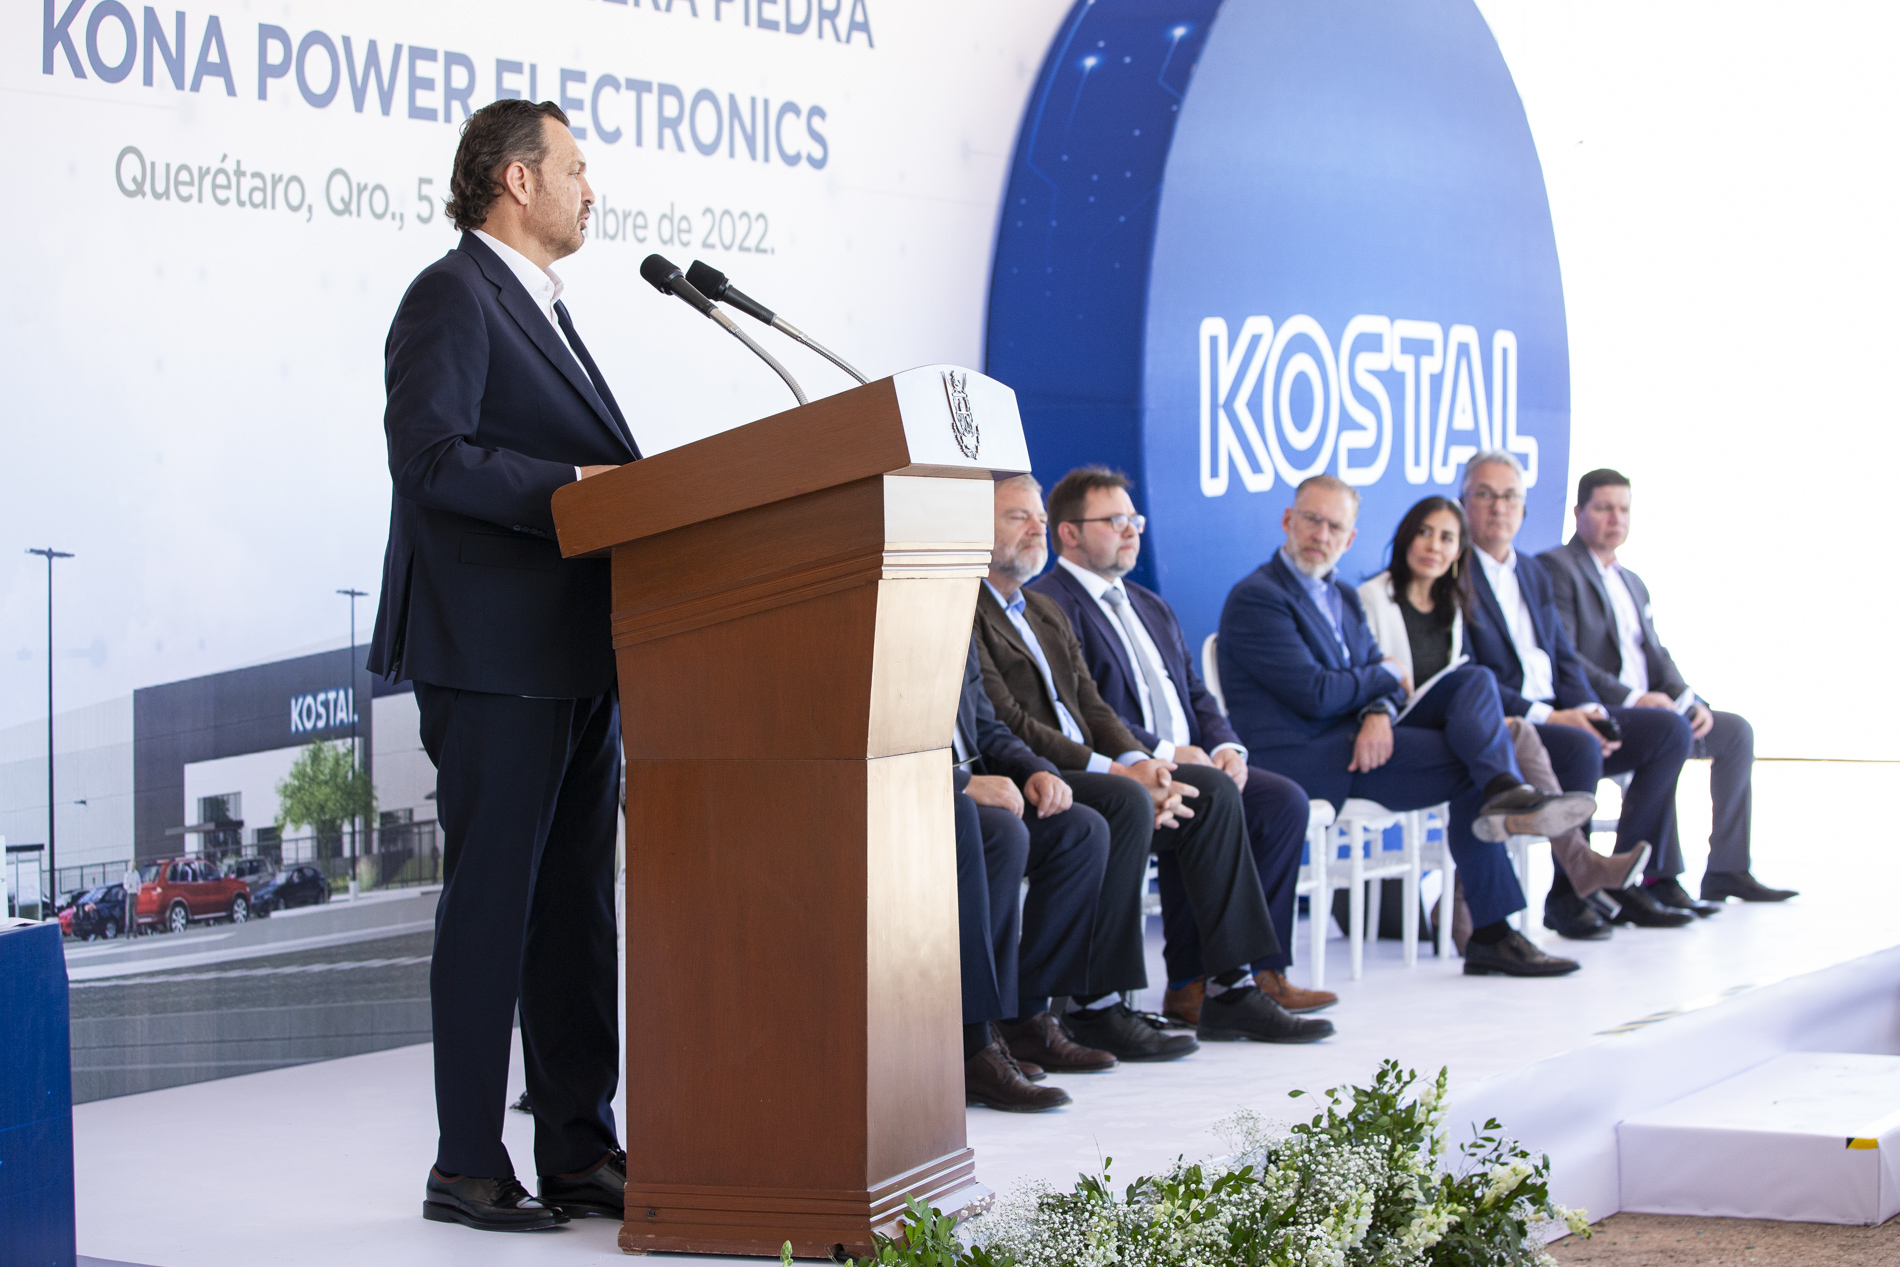 Proyecta Grupo KOSTAL 750 nuevos empleos con la instalación de la tercera planta en Querétaro